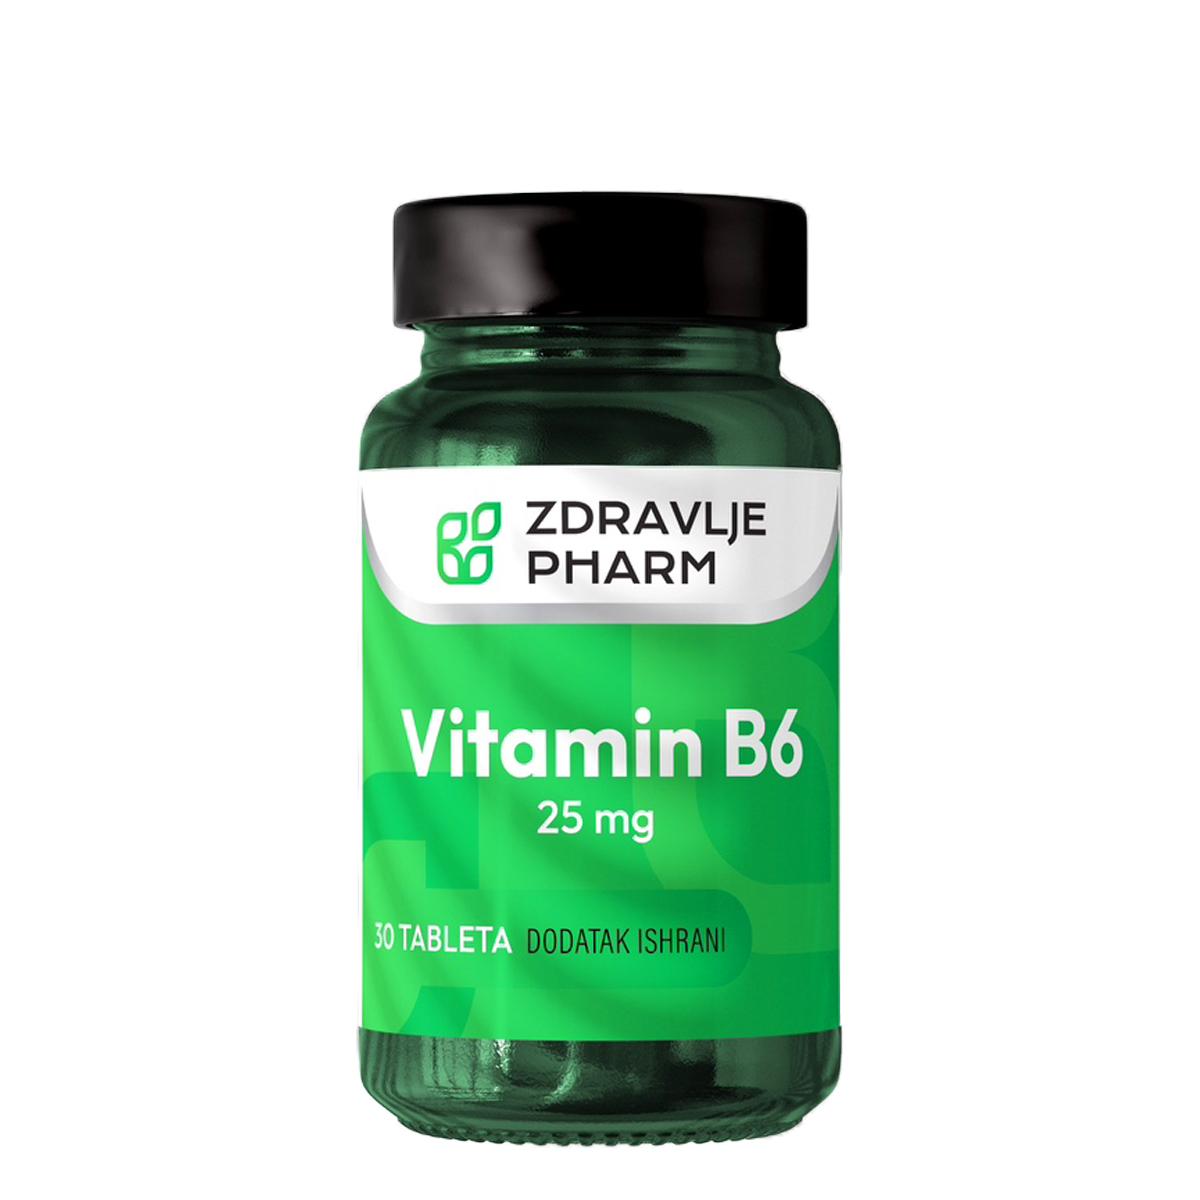 ZDRAVLJE PHARM Vitamin B6 25mg 30 tableta